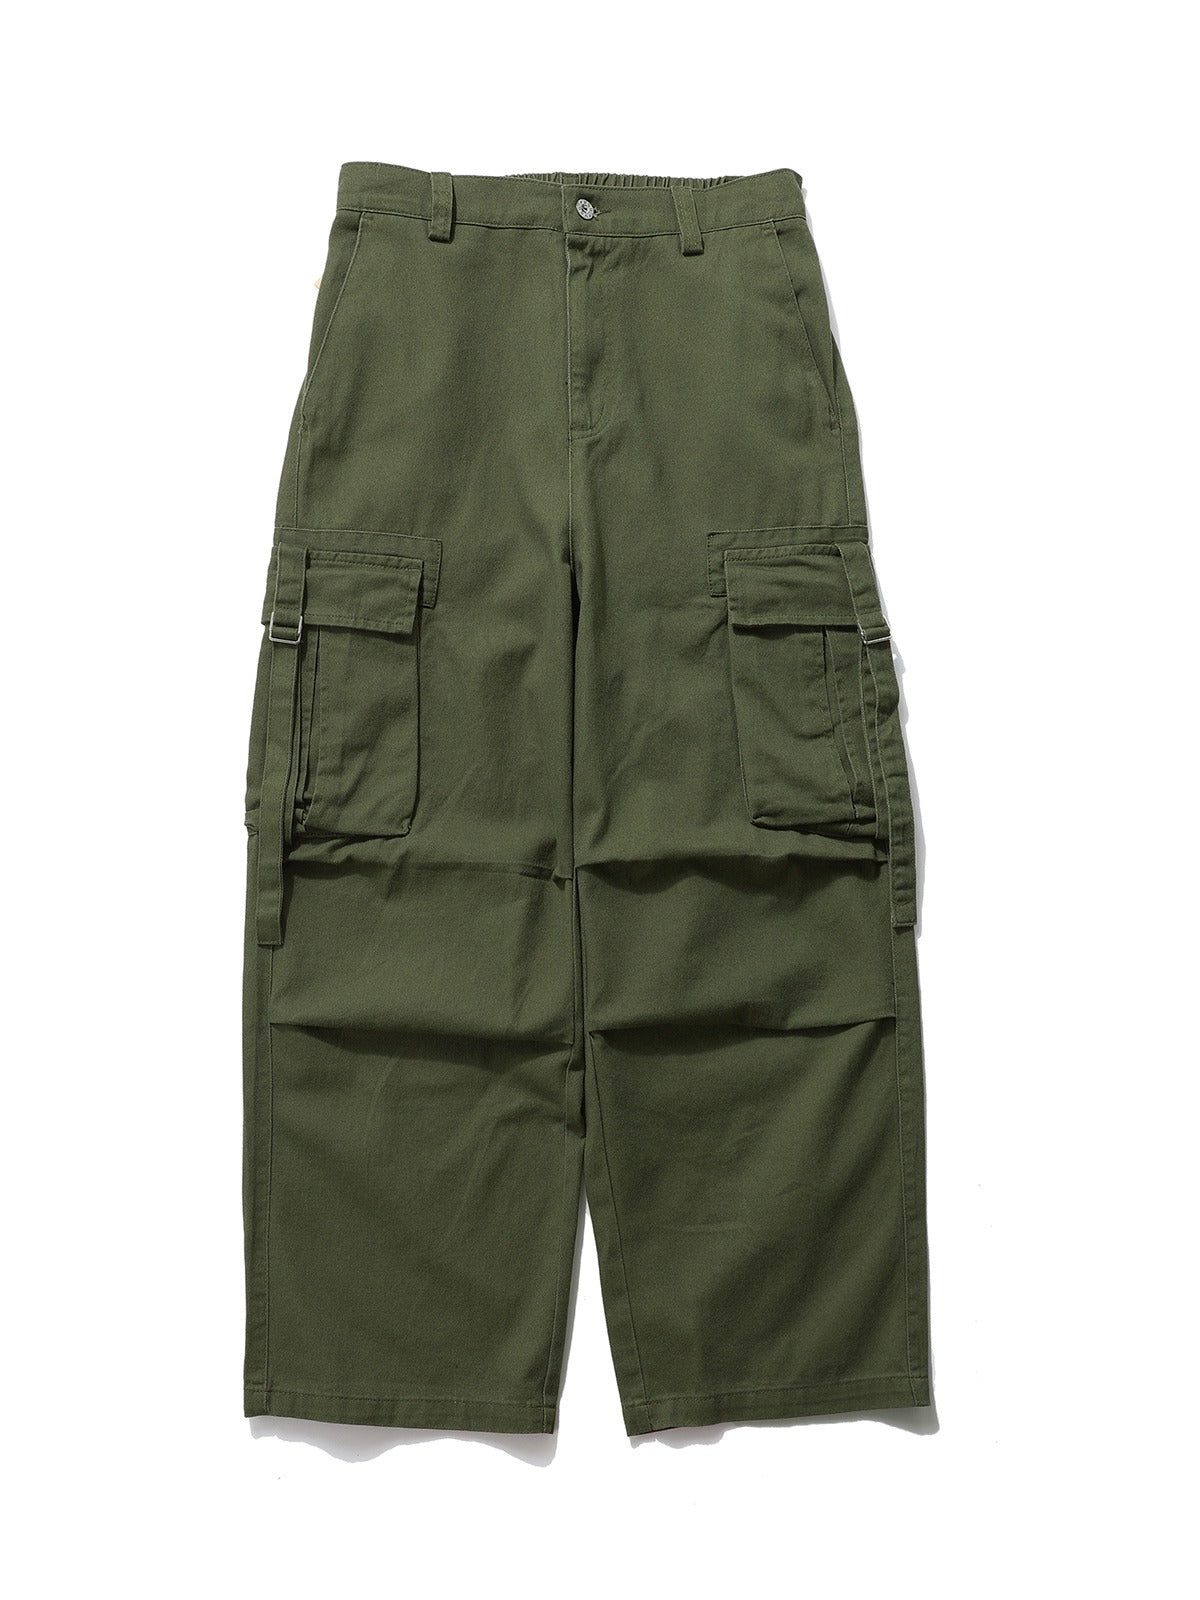 American Vintage Army Pants